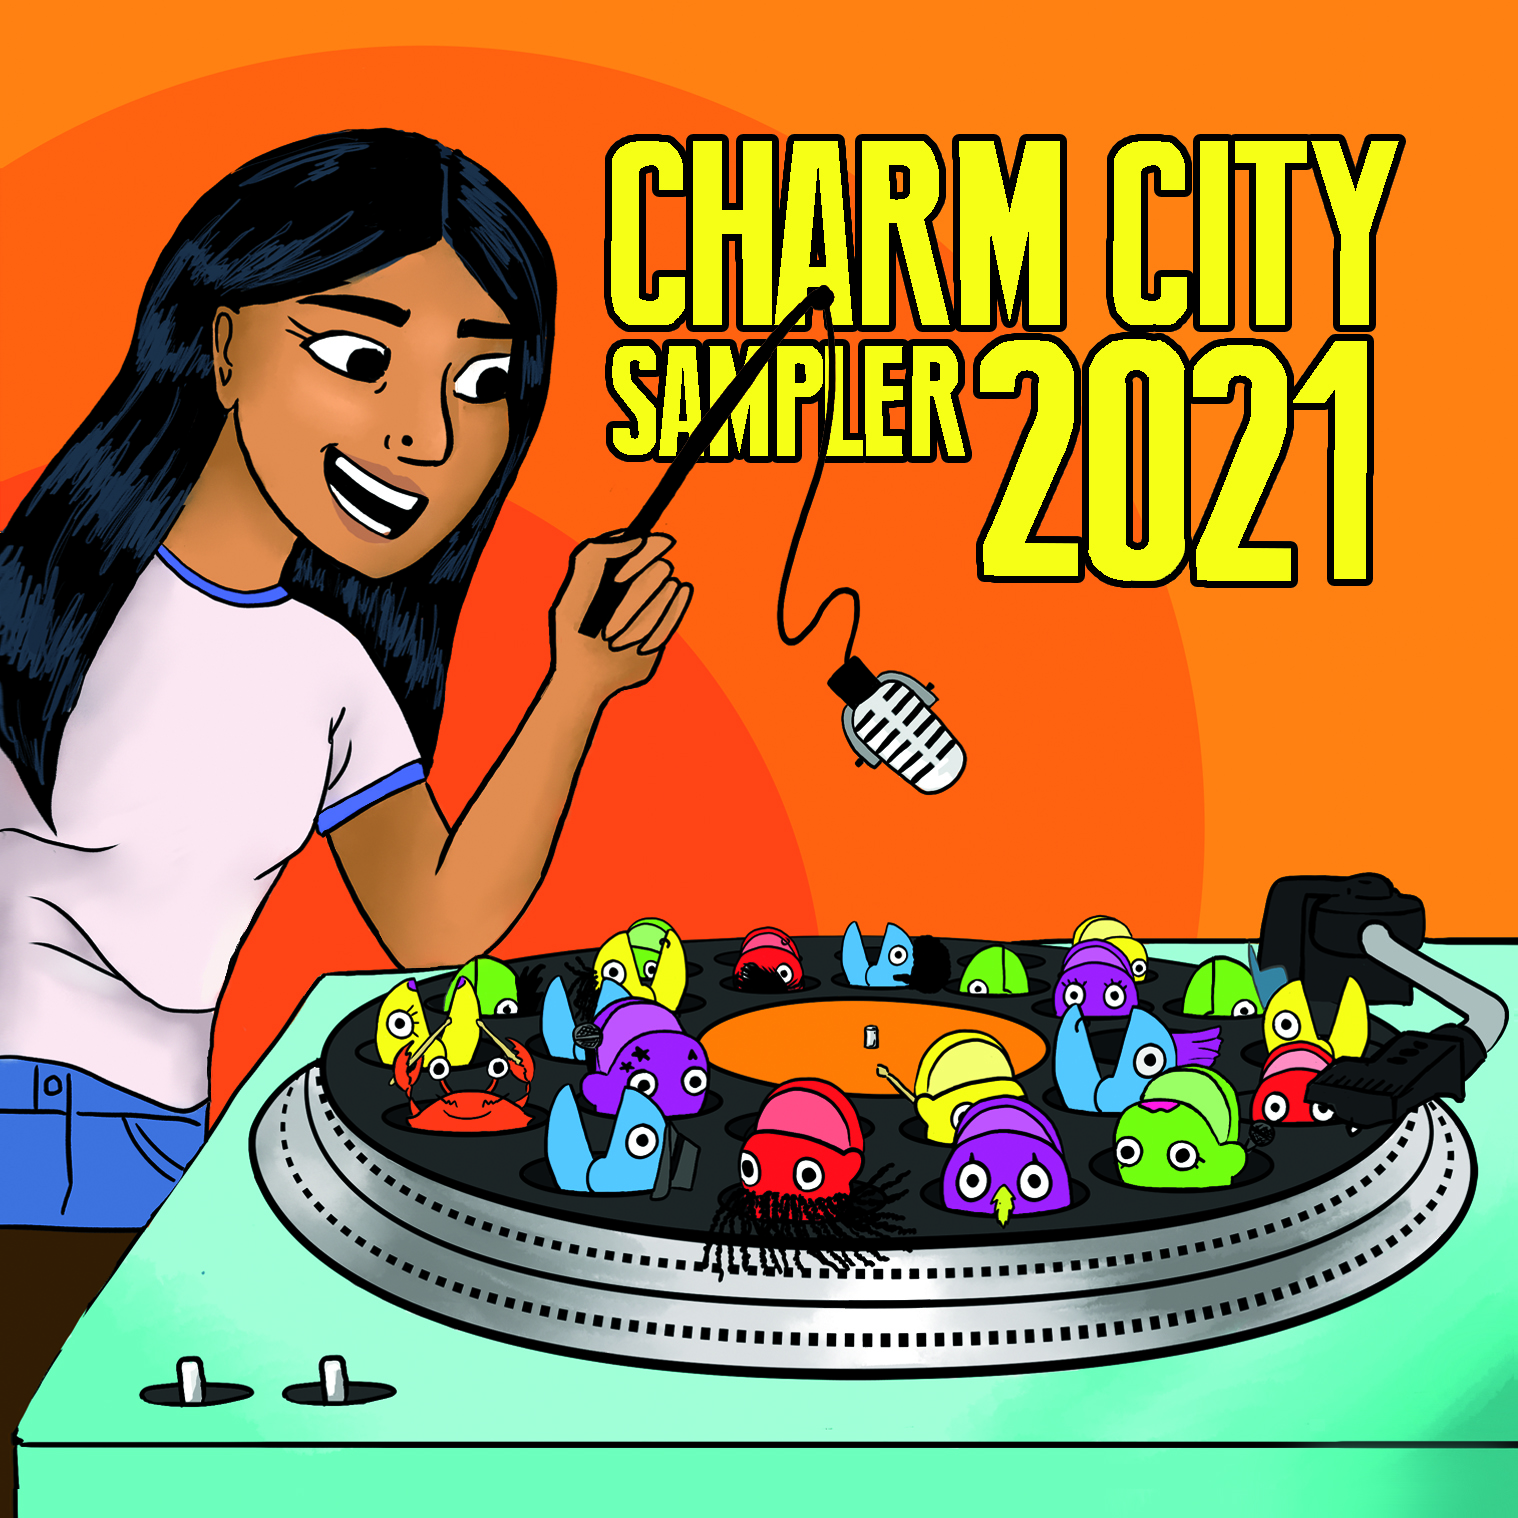 Charm City Sampler 2021